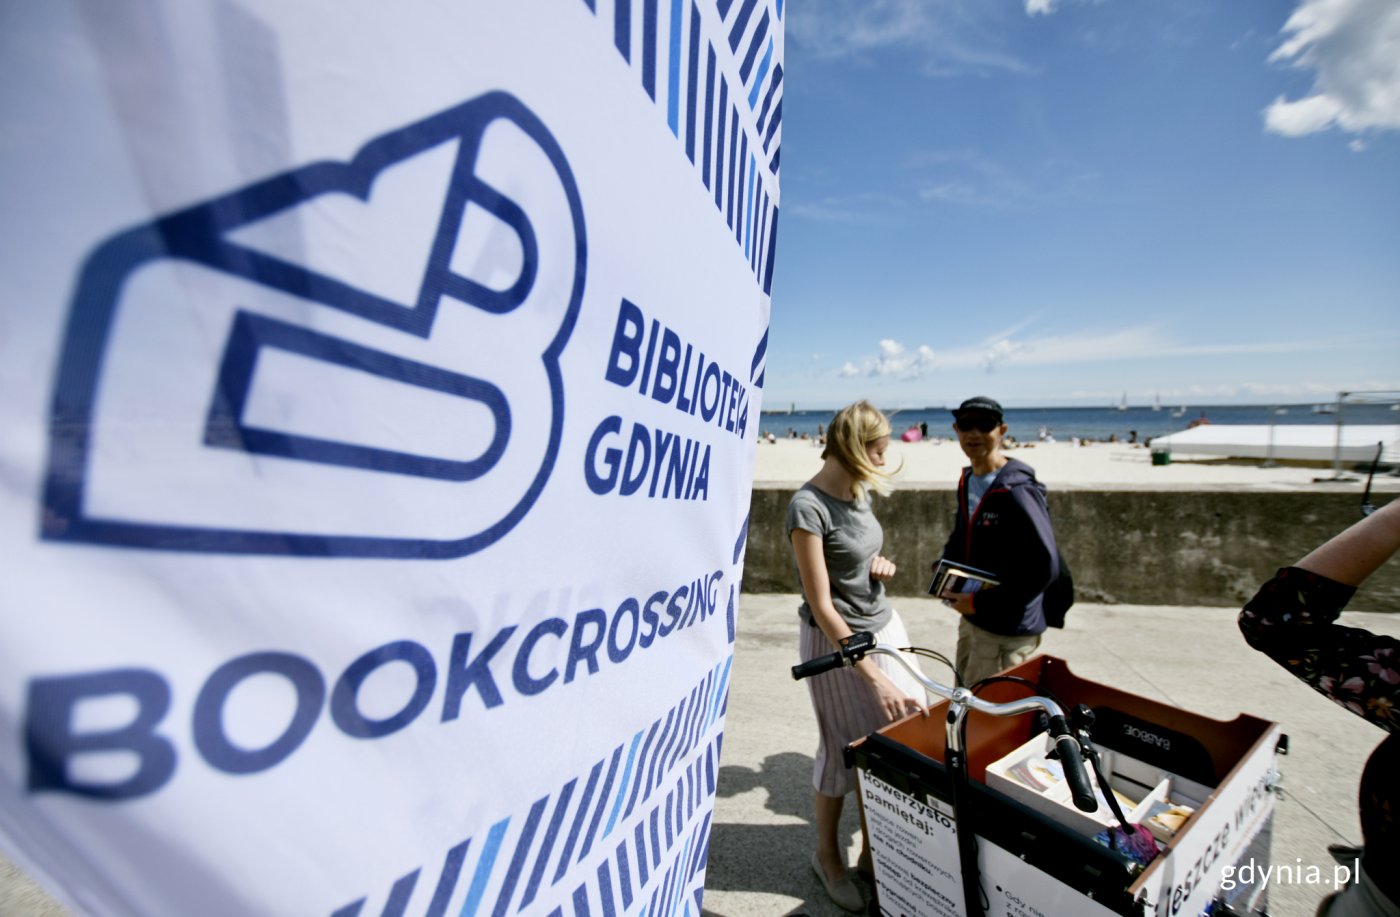 Bibliorower to mobilny punkt bookcrossingowy Biblioteki Gdynia. // fot. Kamil Złoch (archiwum)